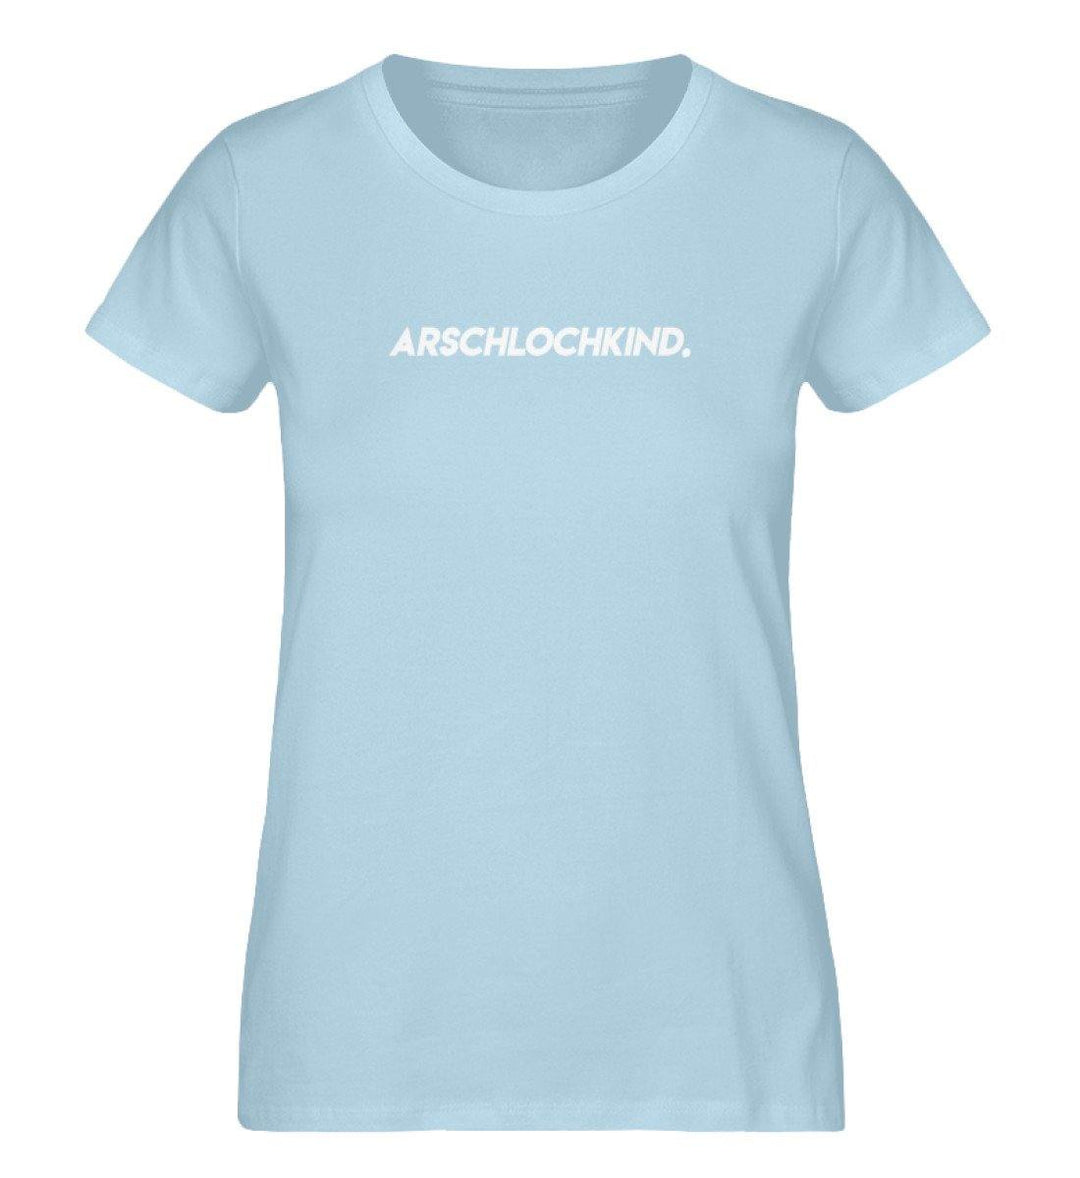 Arschlochkind - Damen Premium Organic Shirt - Words on Shirts Sag es mit dem Mittelfinger Shirts Hoodies Sweatshirt Taschen Gymsack Spruch Sprüche Statement